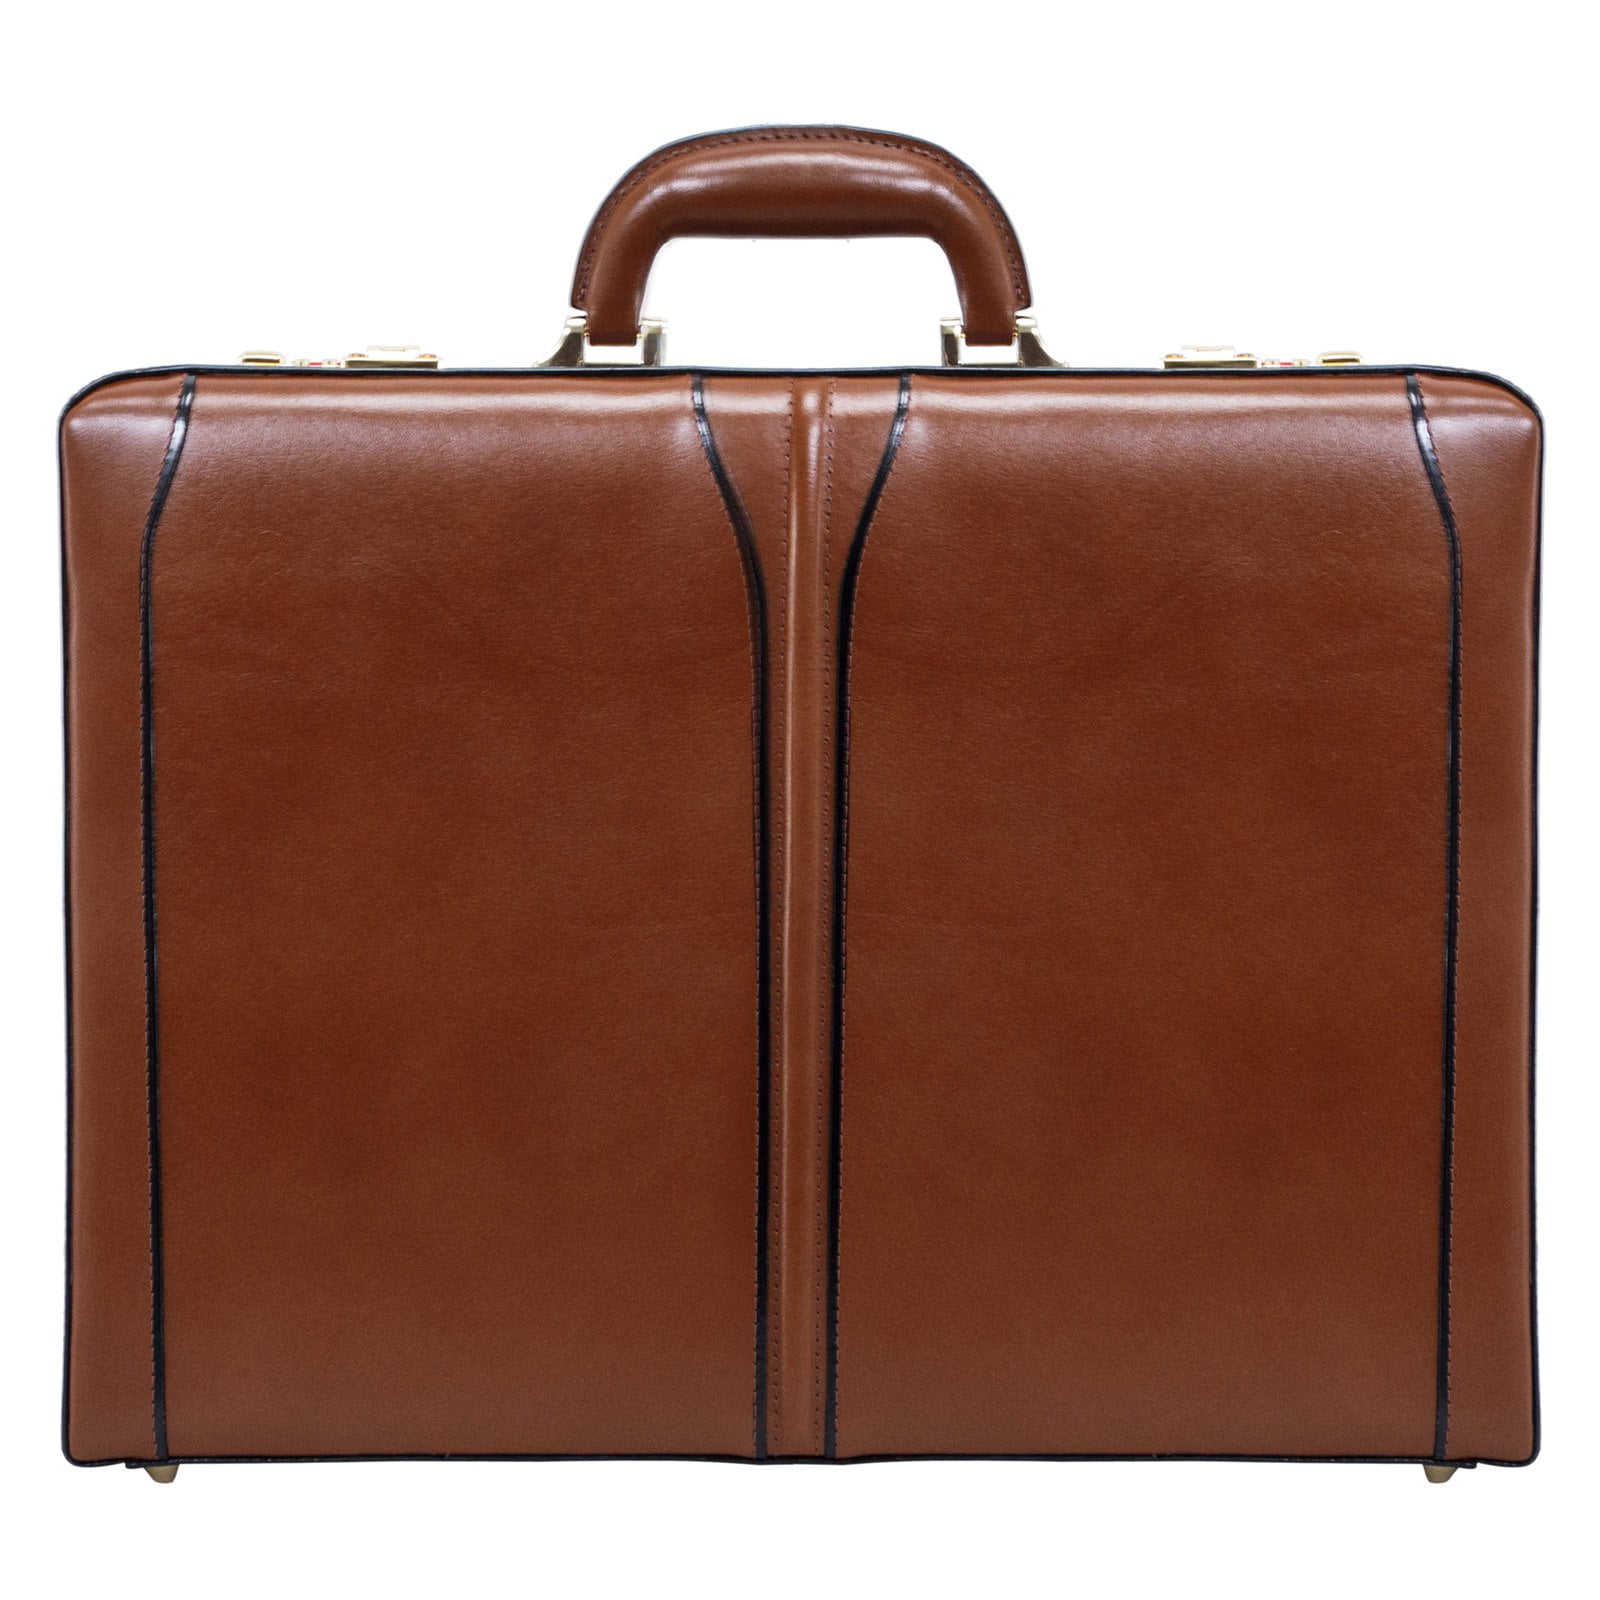 McKlein USA - Lawson Leather Attache Case - Brown - Walmart.com